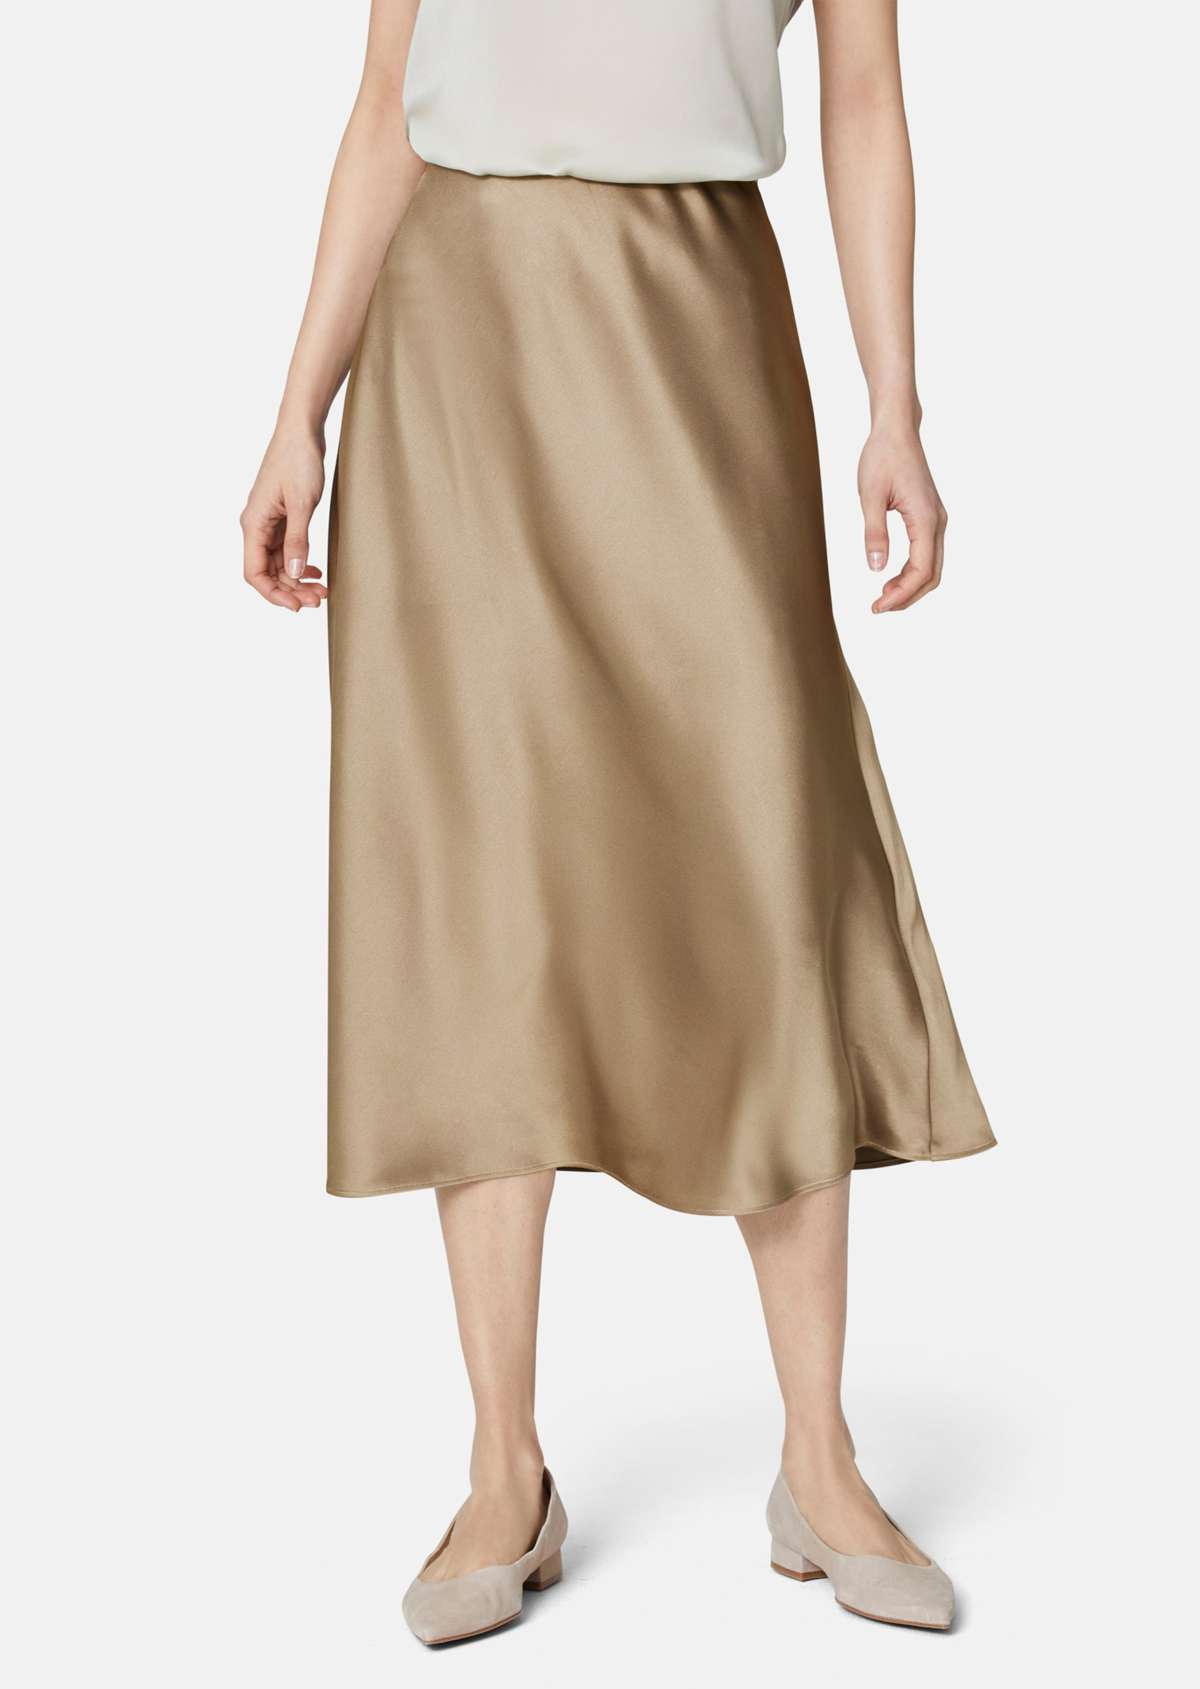 Элегантная атласная юбка длины миди.